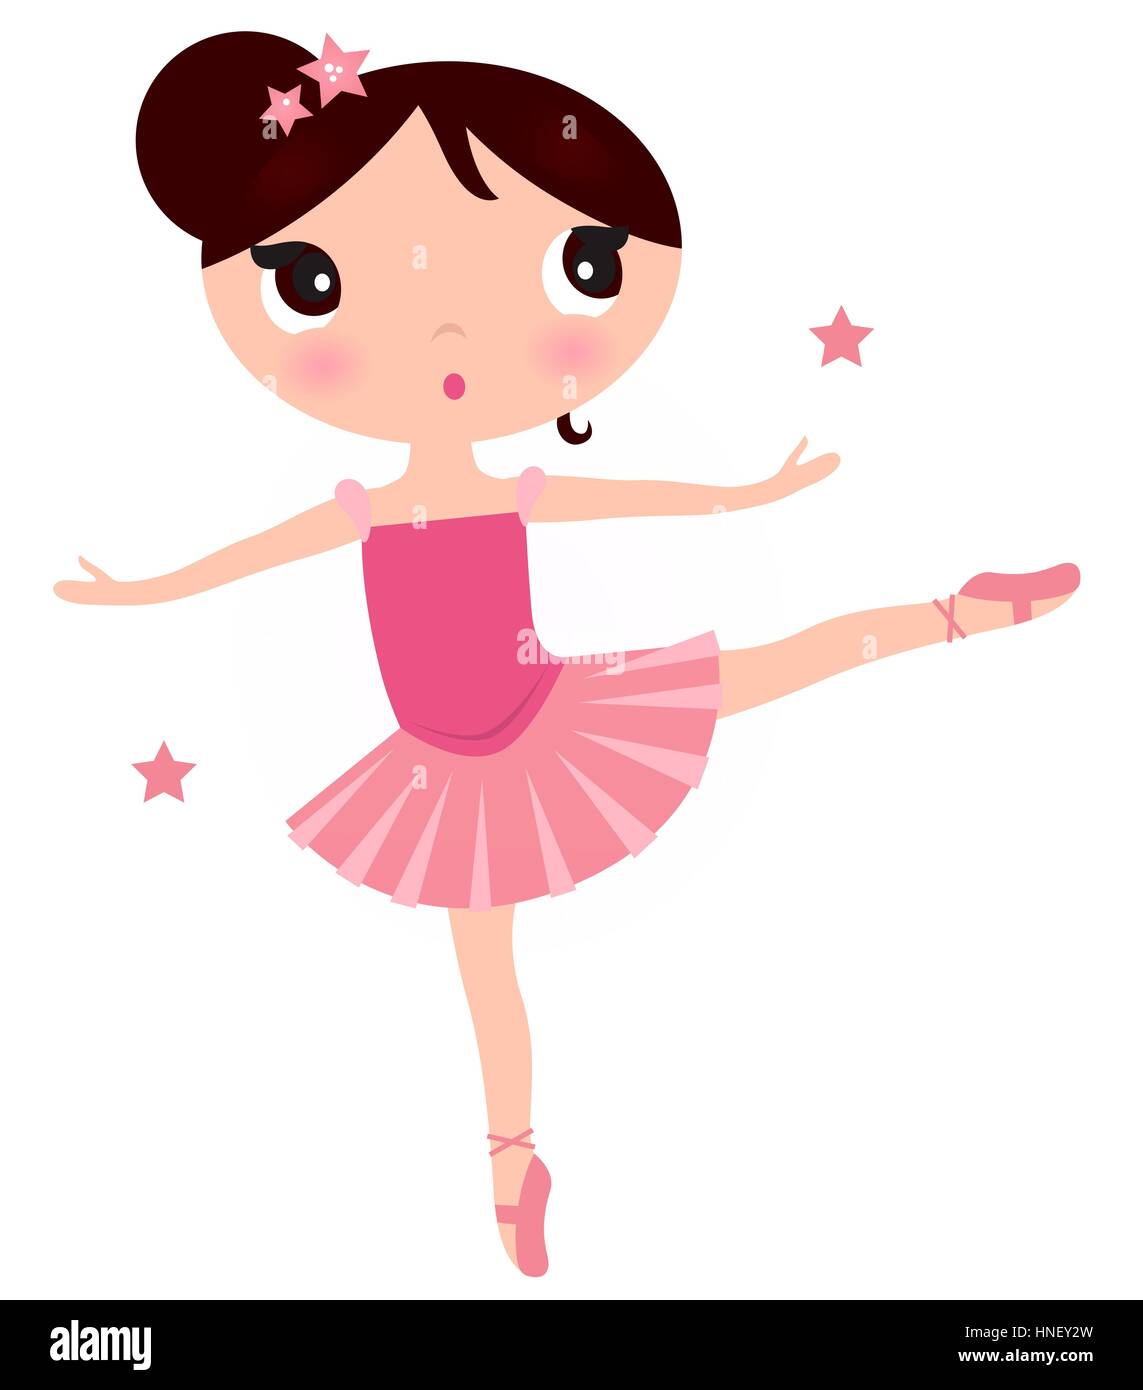 Beautiful little ballerina girl. Kids illustration Stock Photo - Alamy